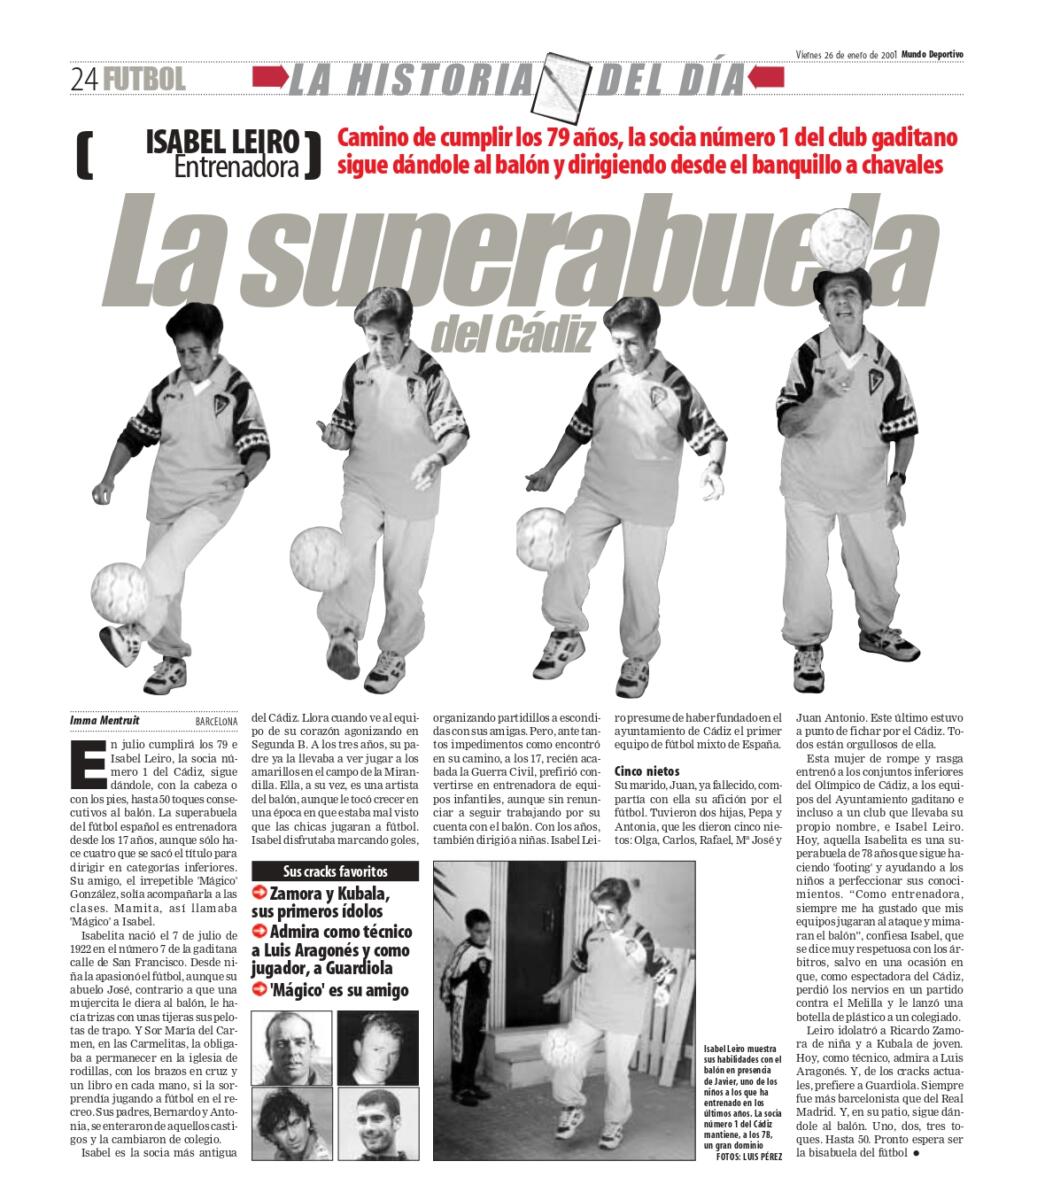 Artículo sobre Isabel Leiro en Mundo Deportivo (2001).